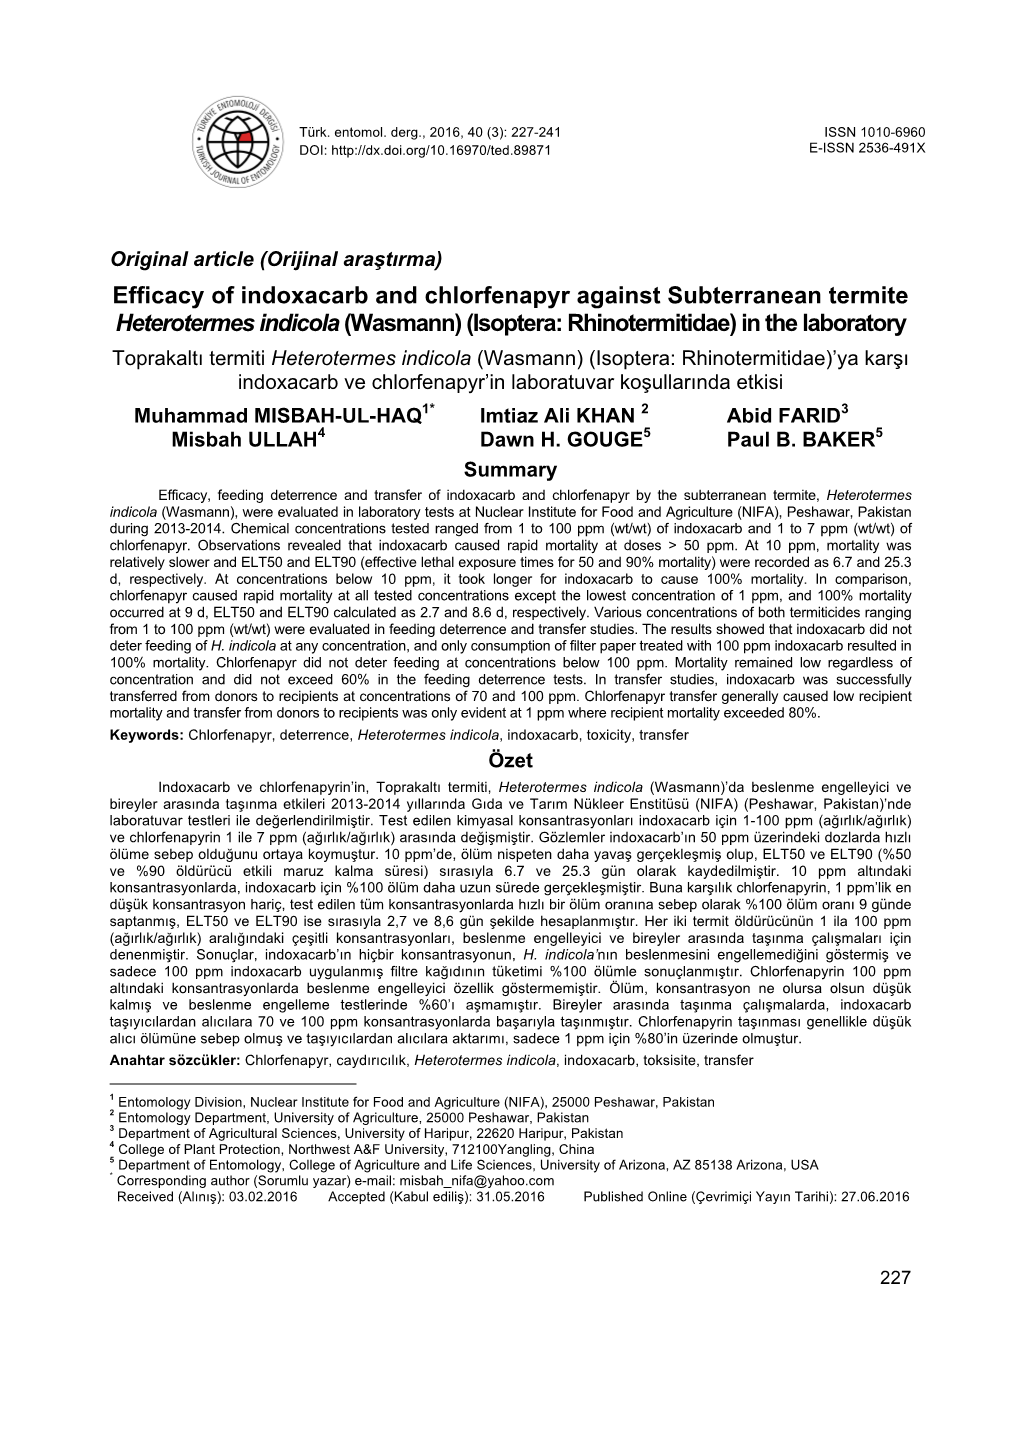 Efficacy of Indoxacarb and Chlorfenapyr Against Subterranean